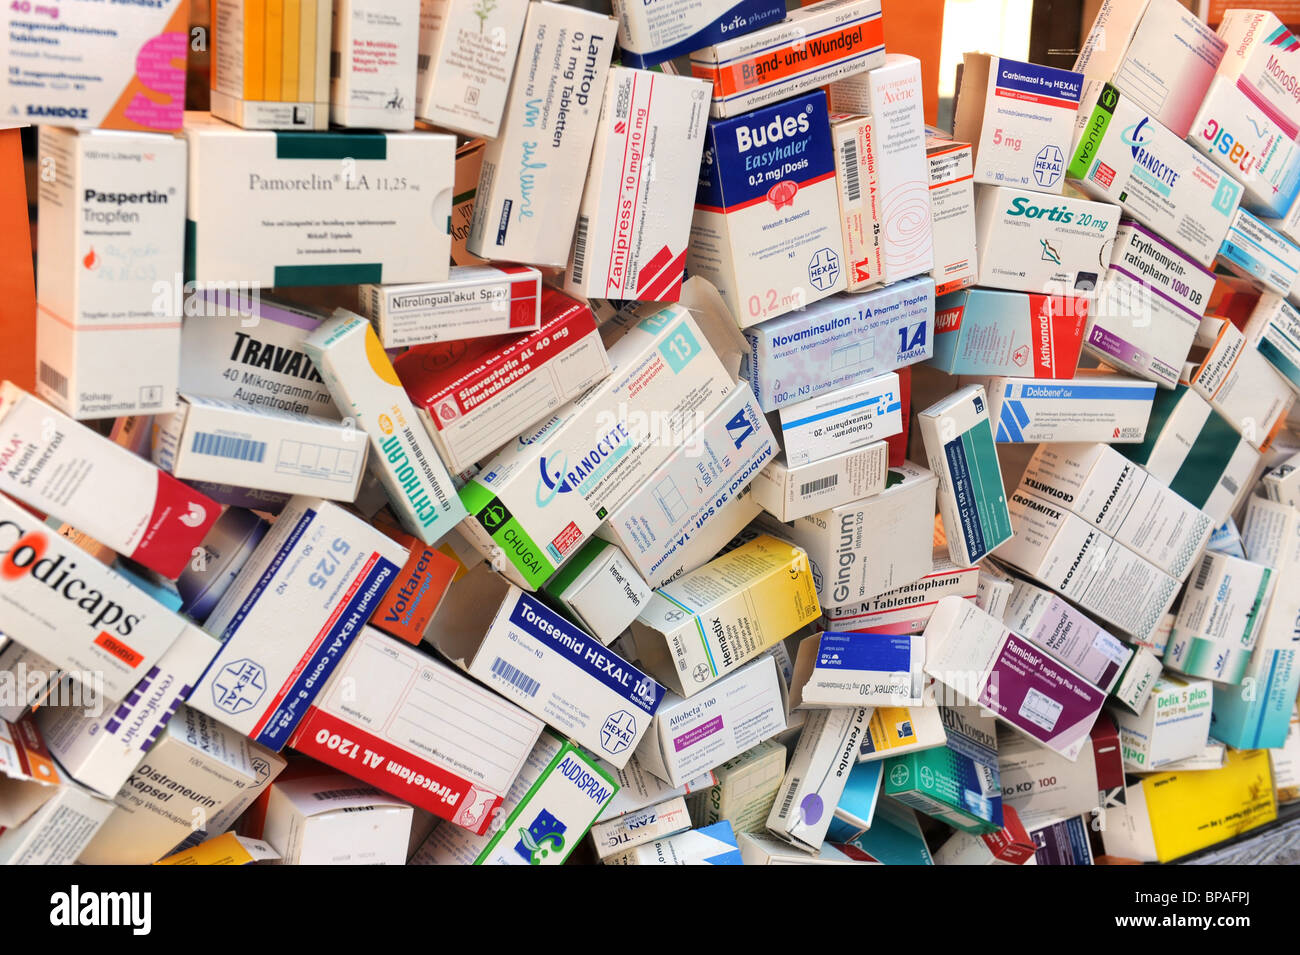 La prescrizione di farmaci in scatole Foto stock - Alamy